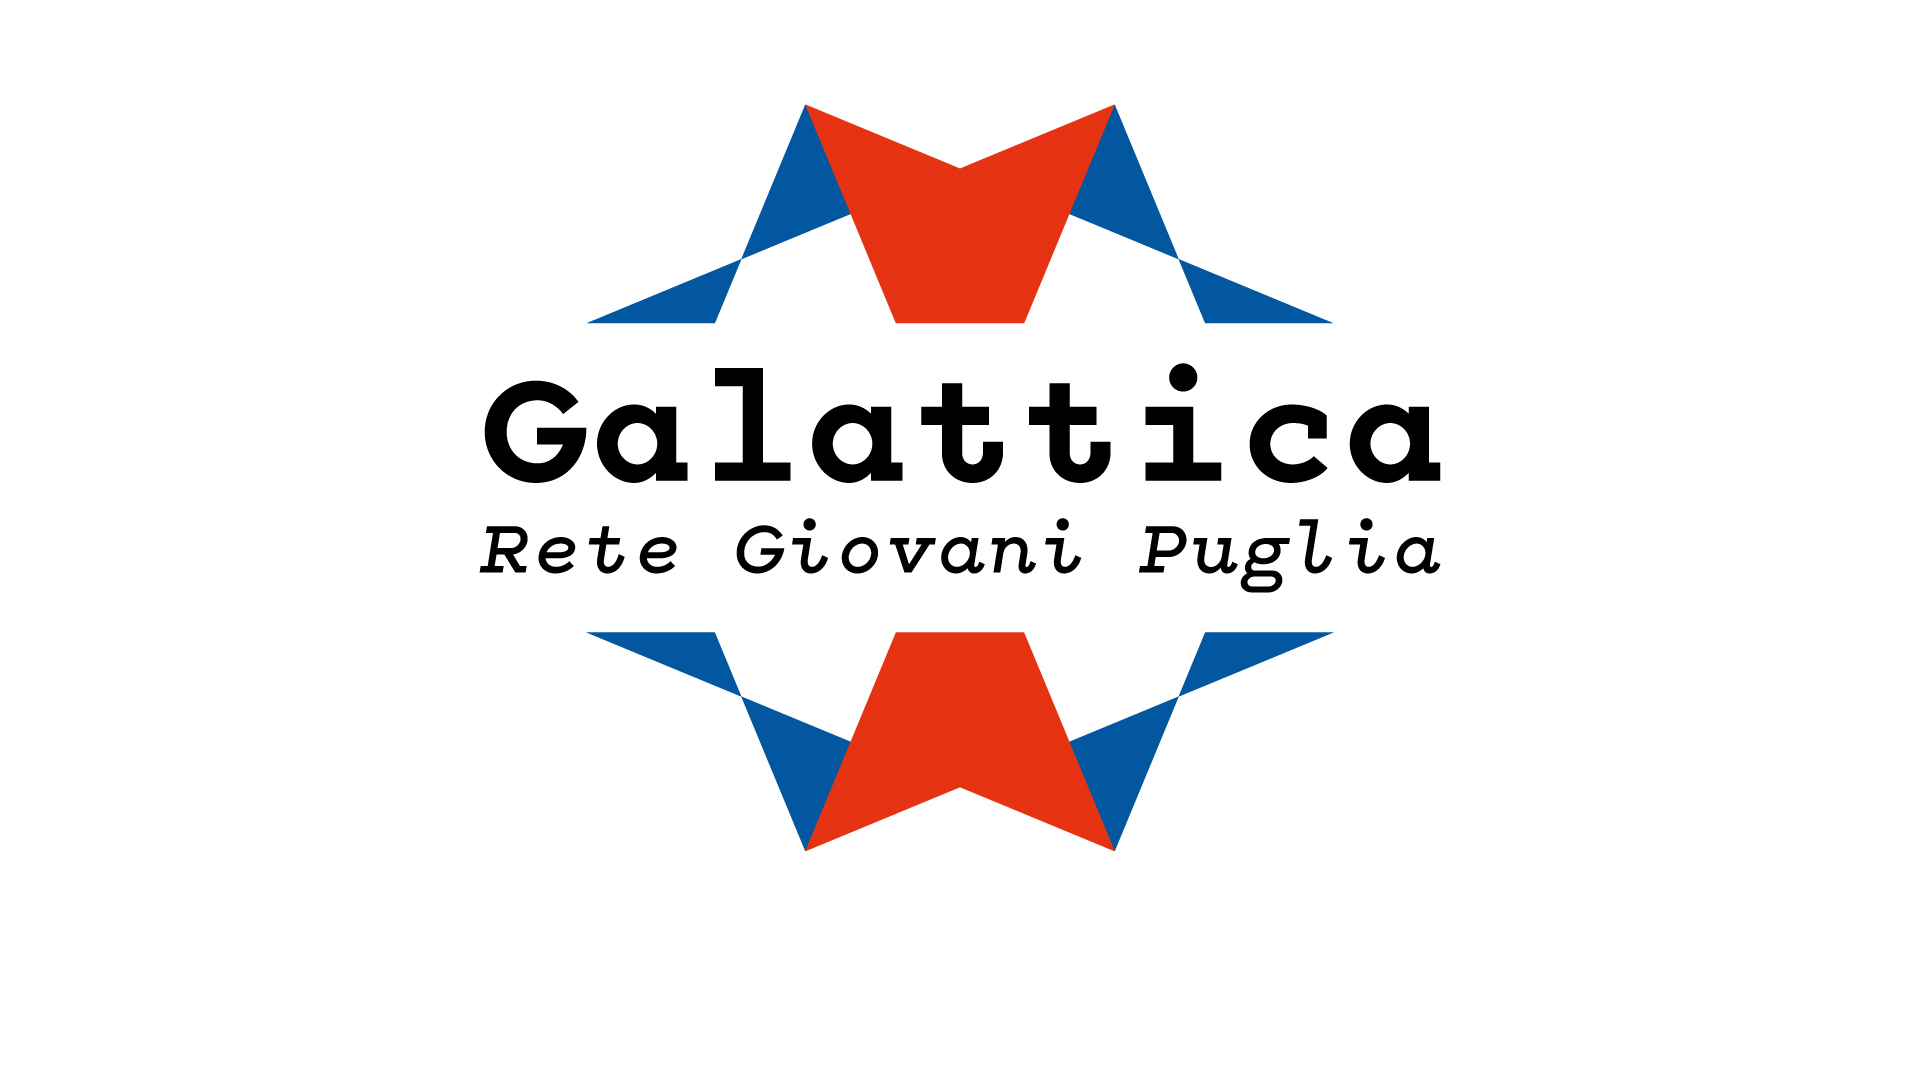 “Galattica – Rete Giovani Puglia”: 27 luglio Regione presenta Avviso ai Comuni pugliesi